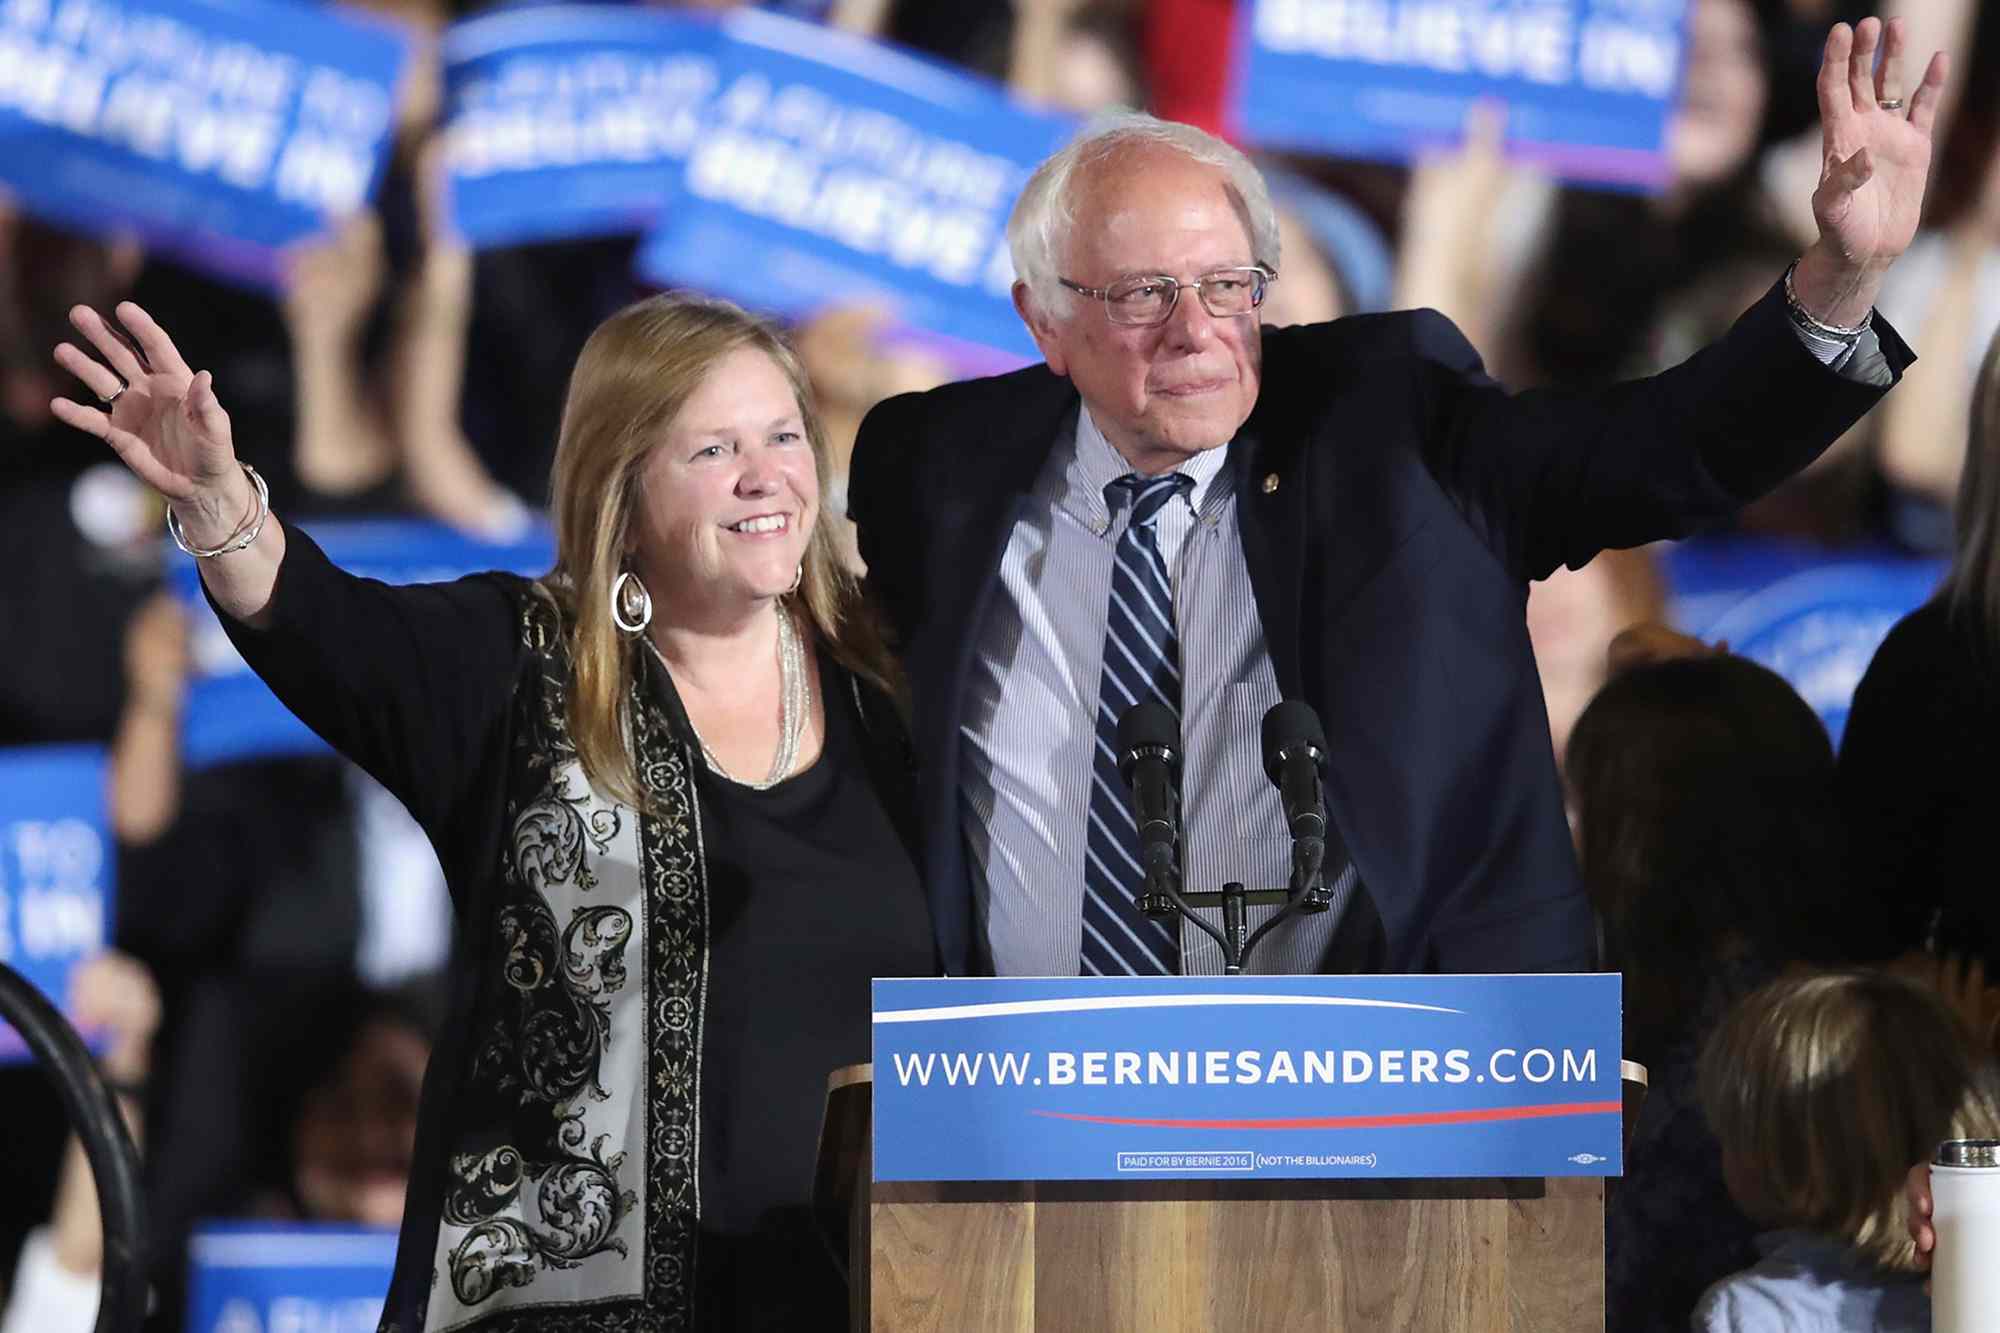 Who Is Bernie Sanders' Wife? All About Jane Sanders